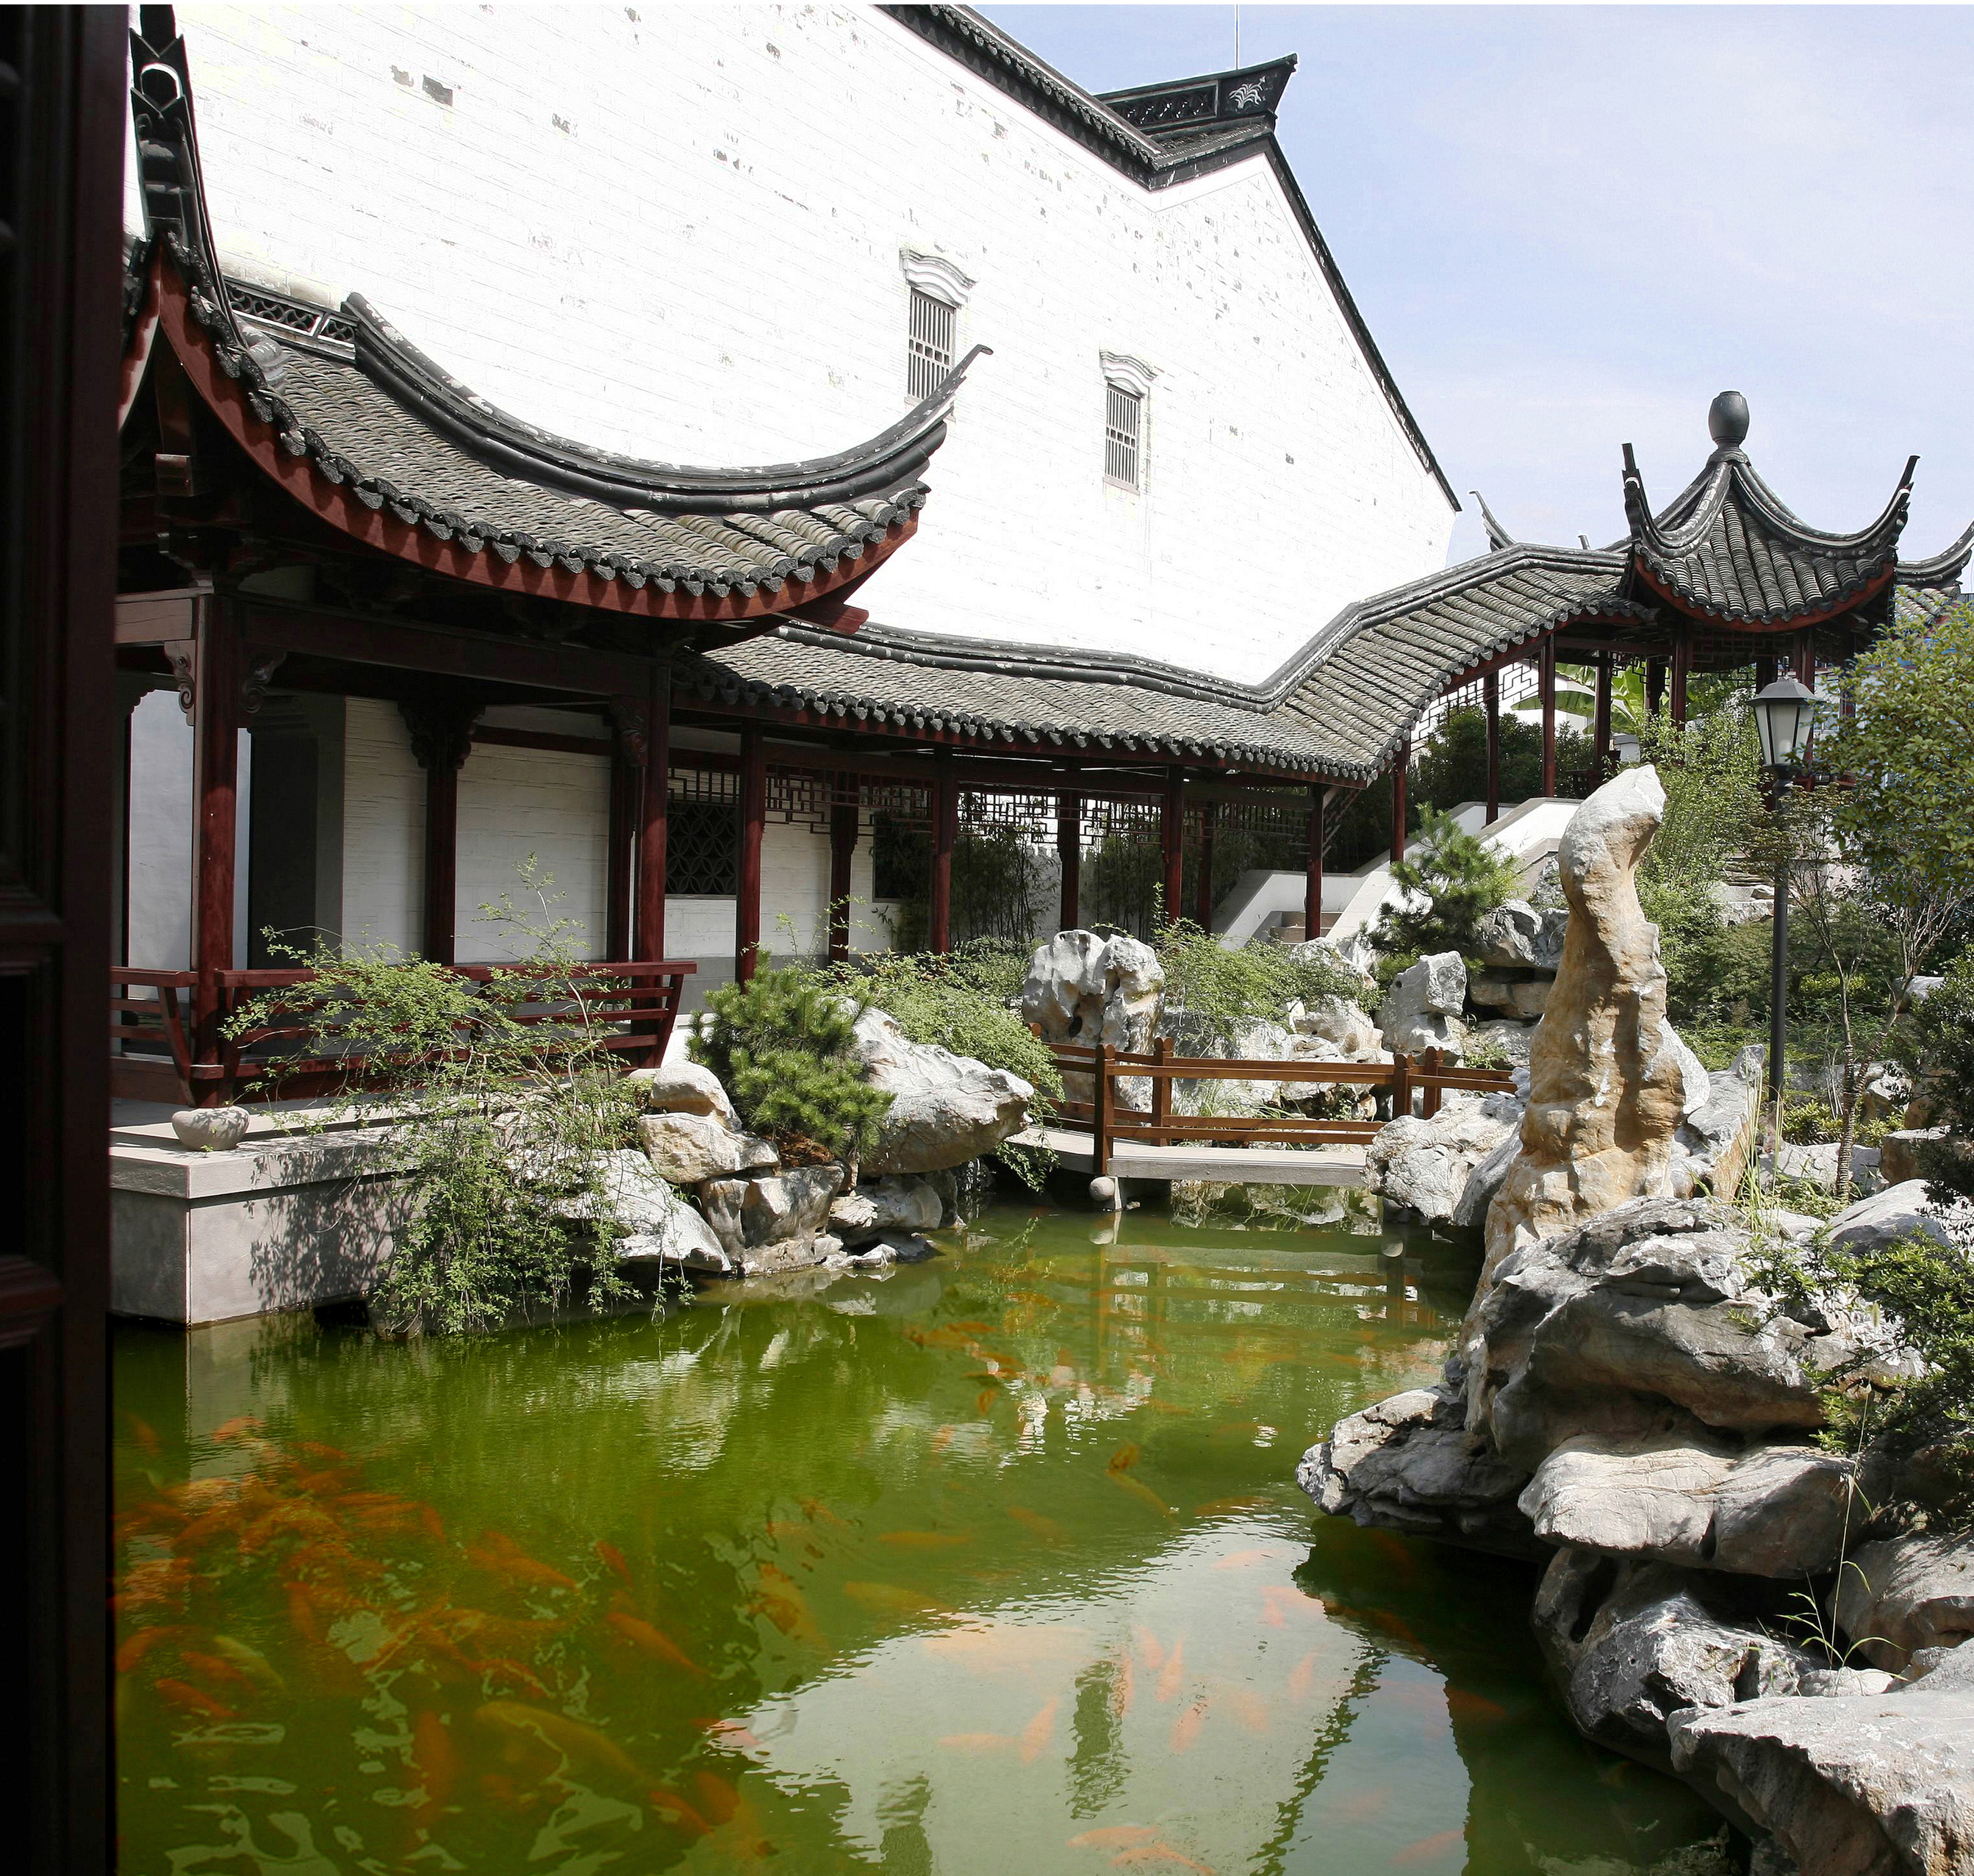 陈之佛艺术馆建筑与景观设计